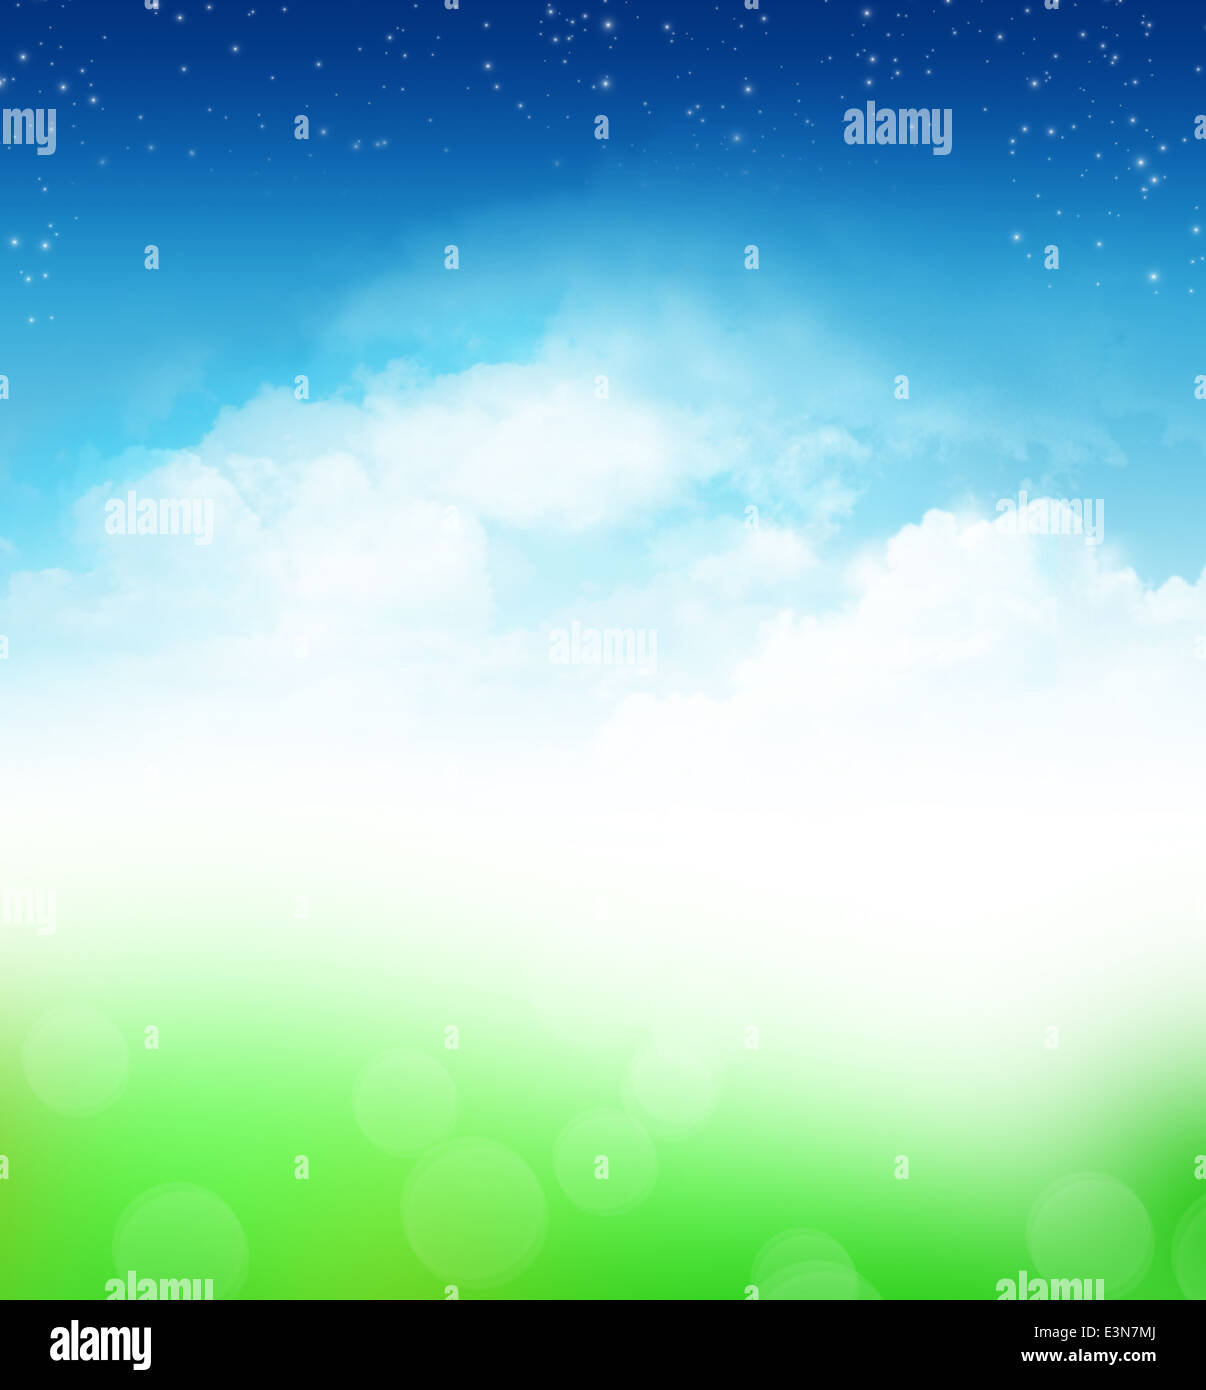 Ciel nuageux Ciel bleu avec des étoiles et green field abstract background Banque D'Images